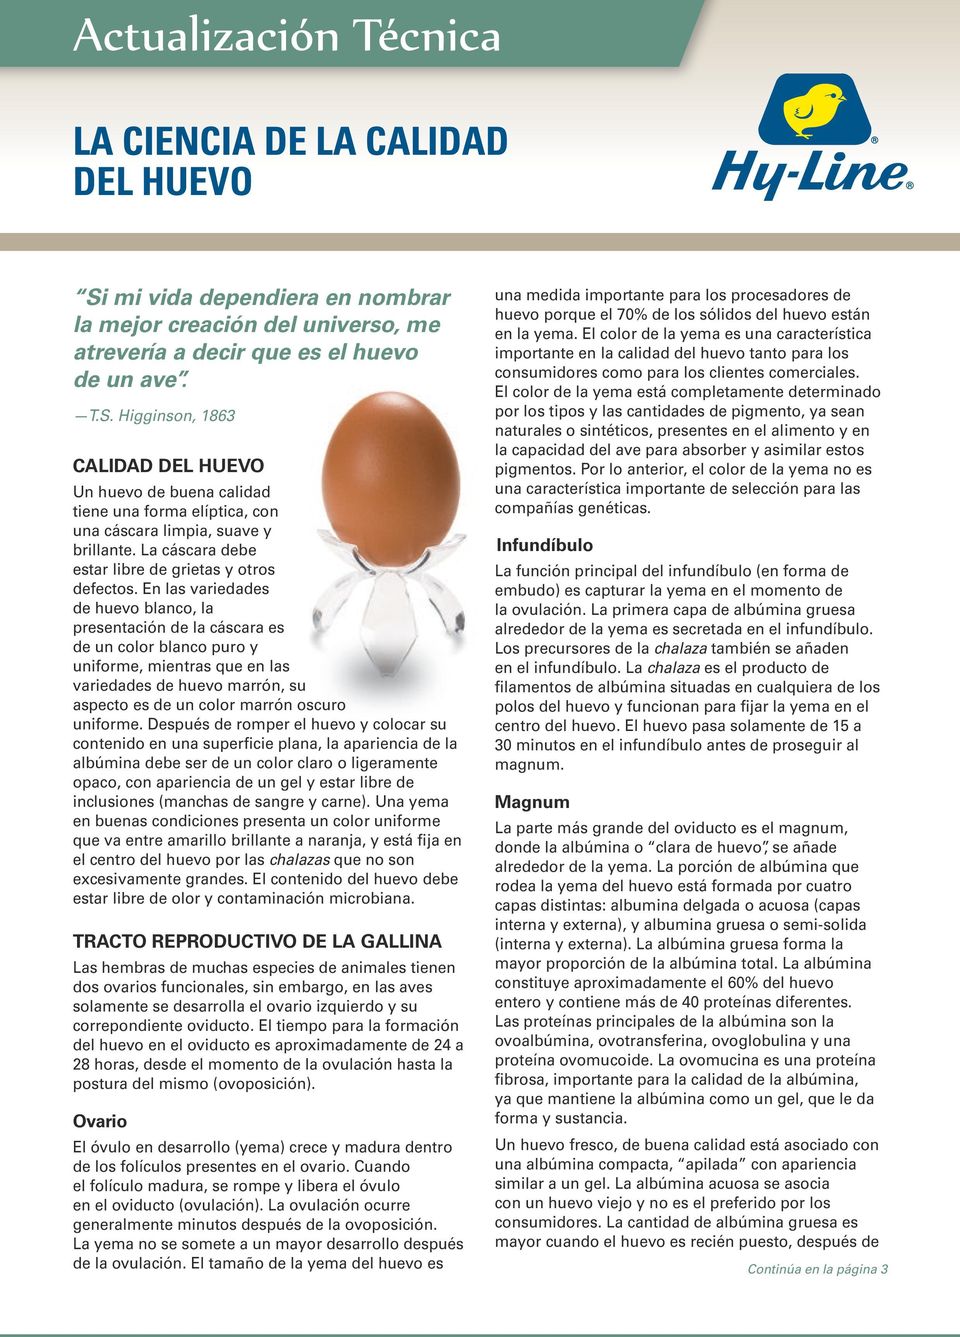 En las variedades de huevo blanco, la presentación de la cáscara es de un color blanco puro y uniforme, mientras que en las variedades de huevo marrón, su aspecto es de un color marrón oscuro